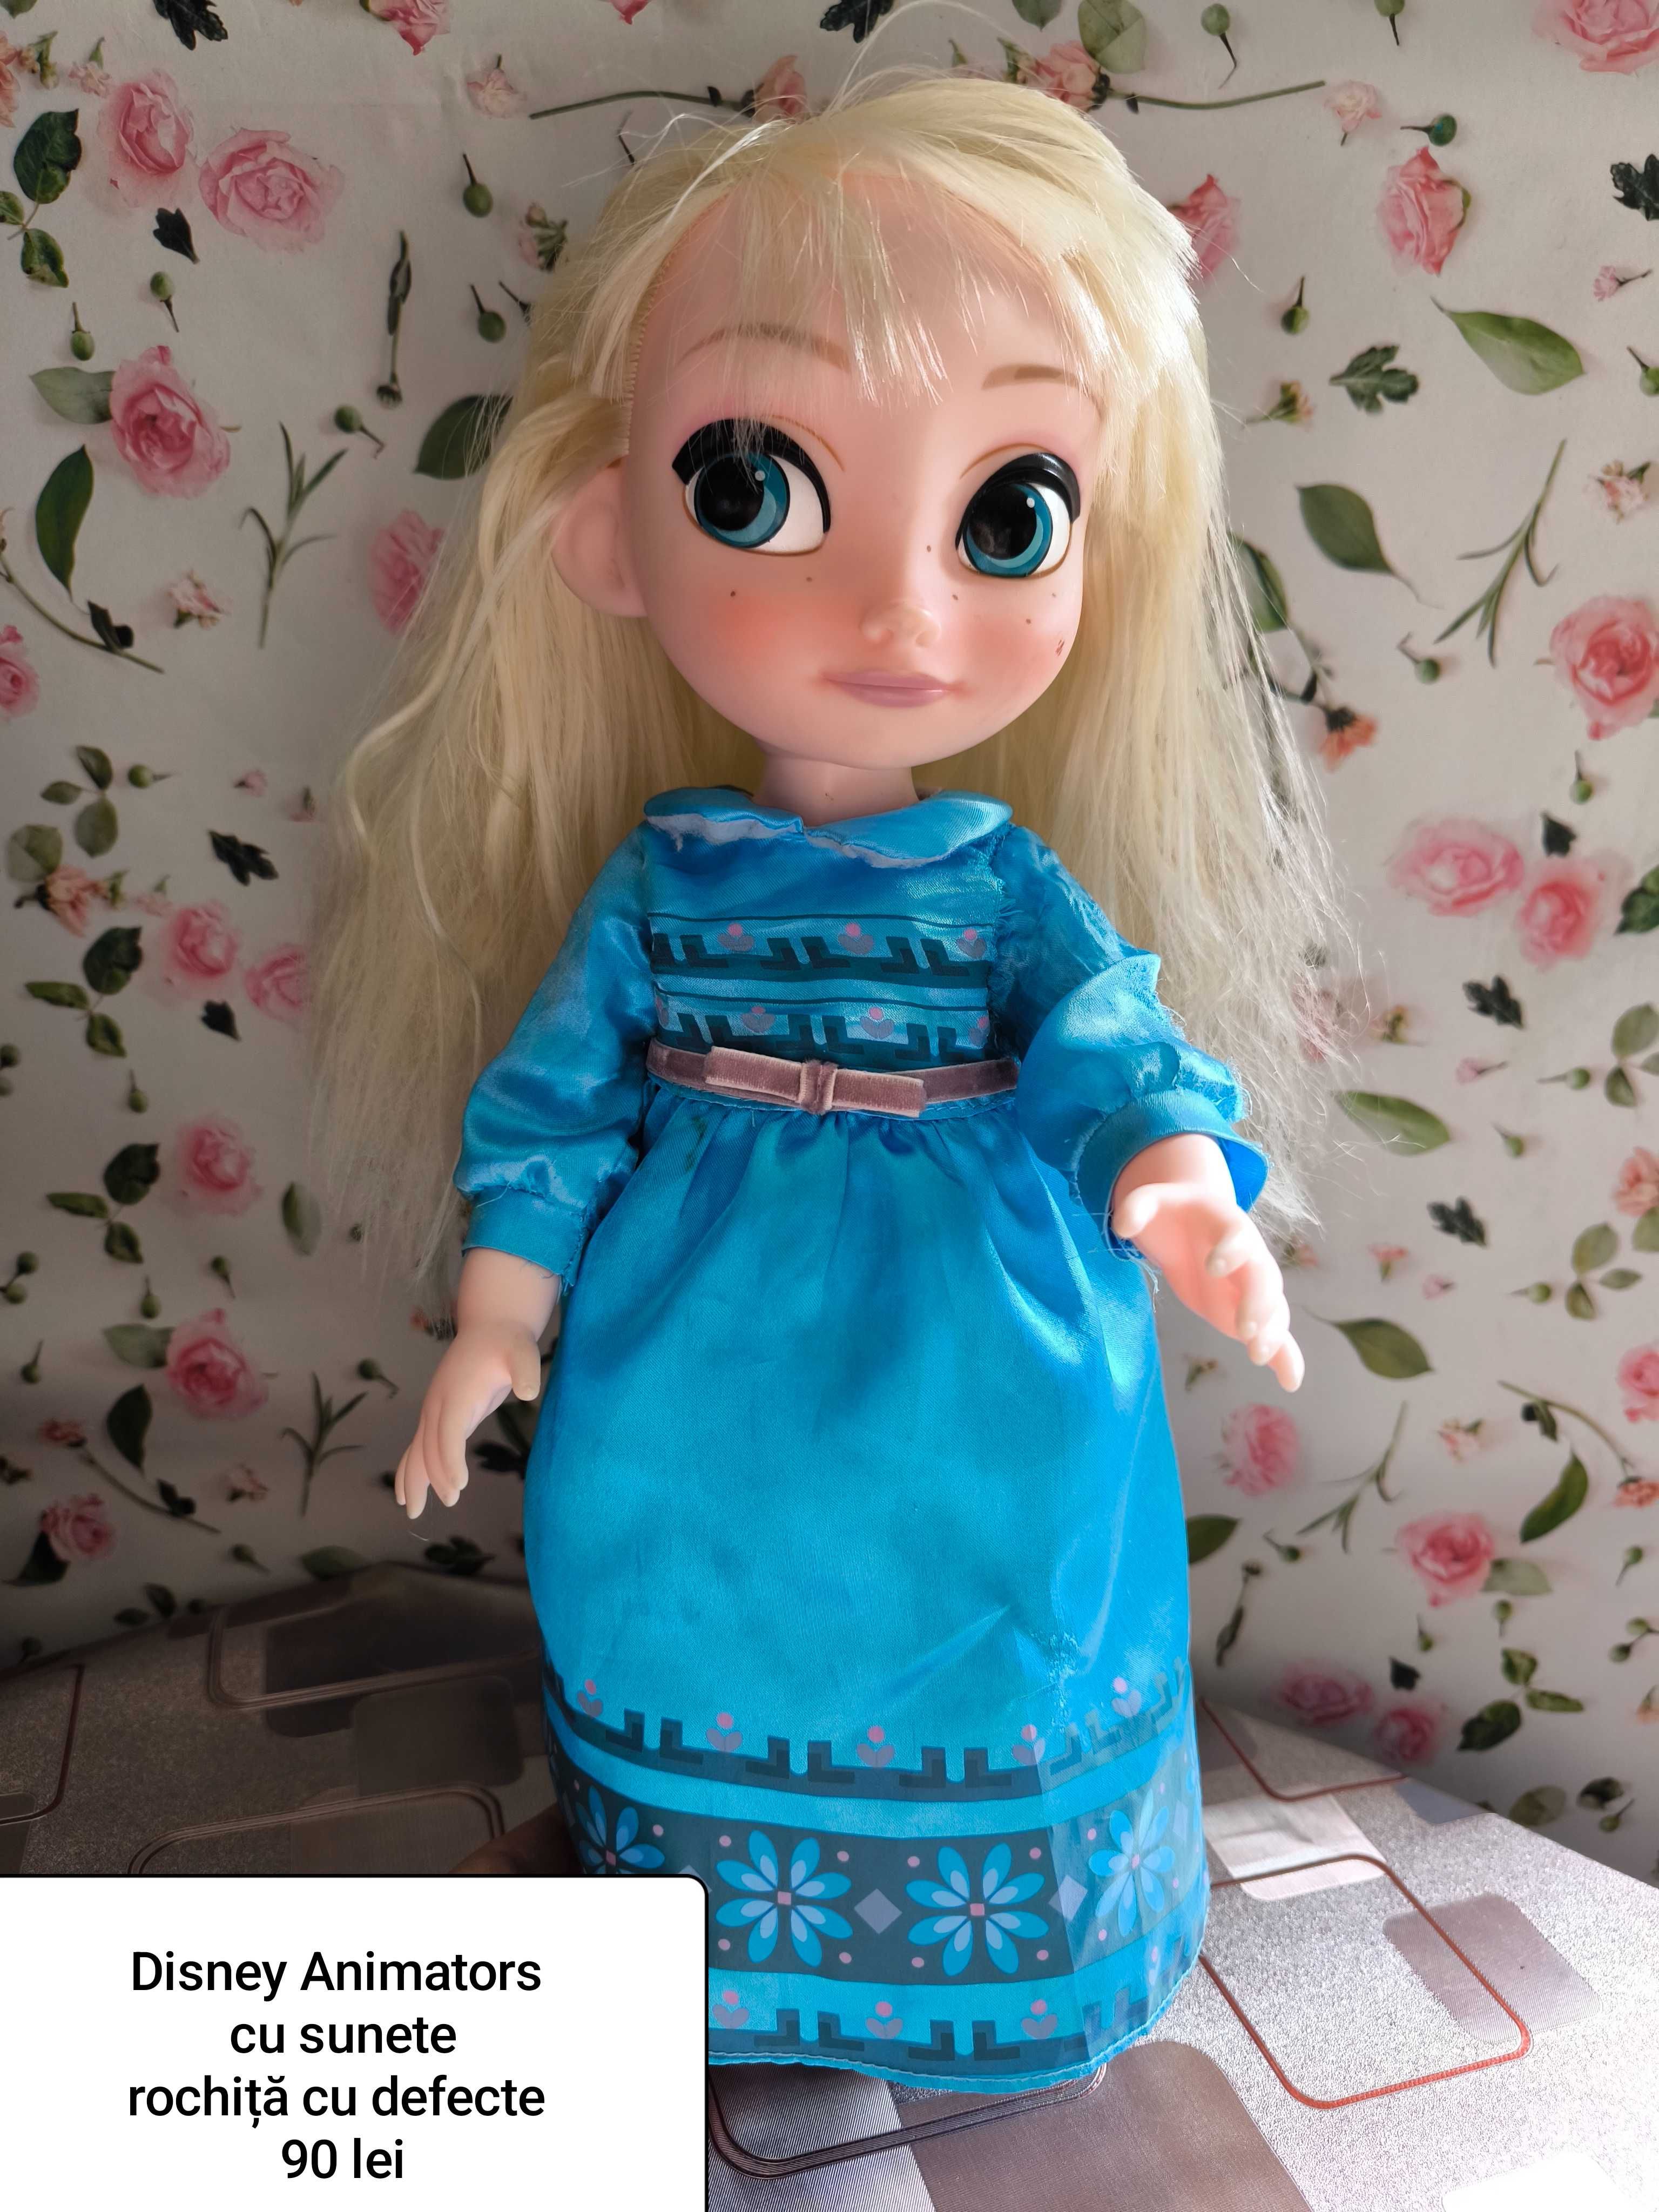 Disney Animators Frozen-Elsa cu funcții